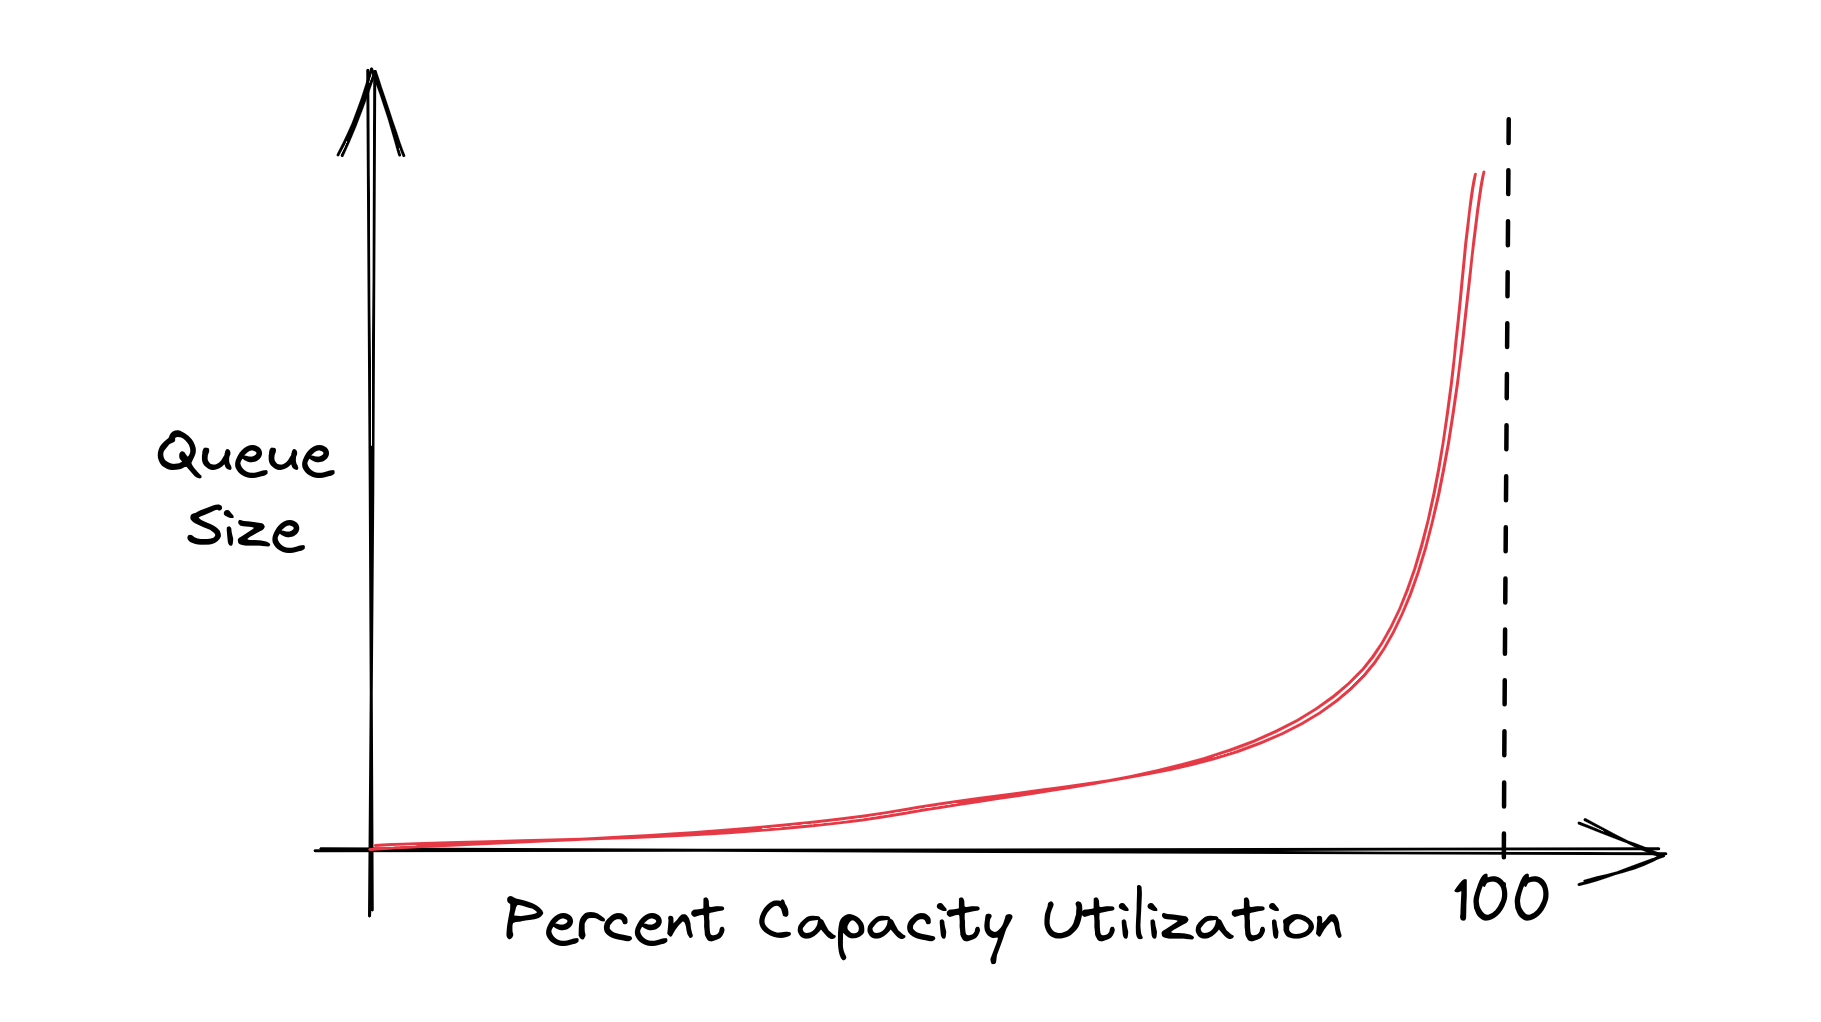 Queue Size vs Percent Capacity Utilization